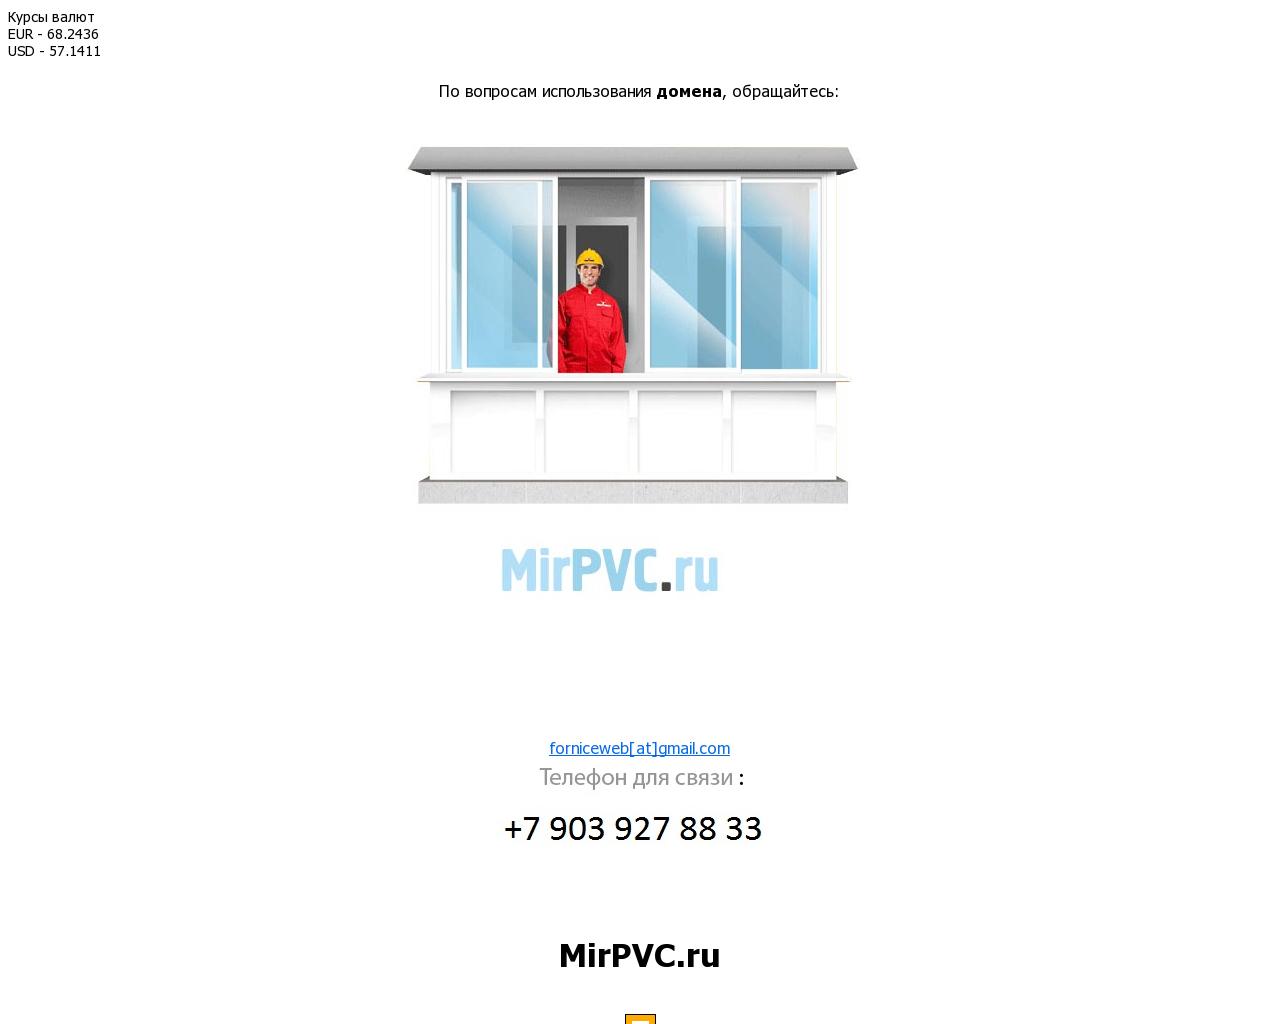 Изображение сайта mirpvc.ru в разрешении 1280x1024